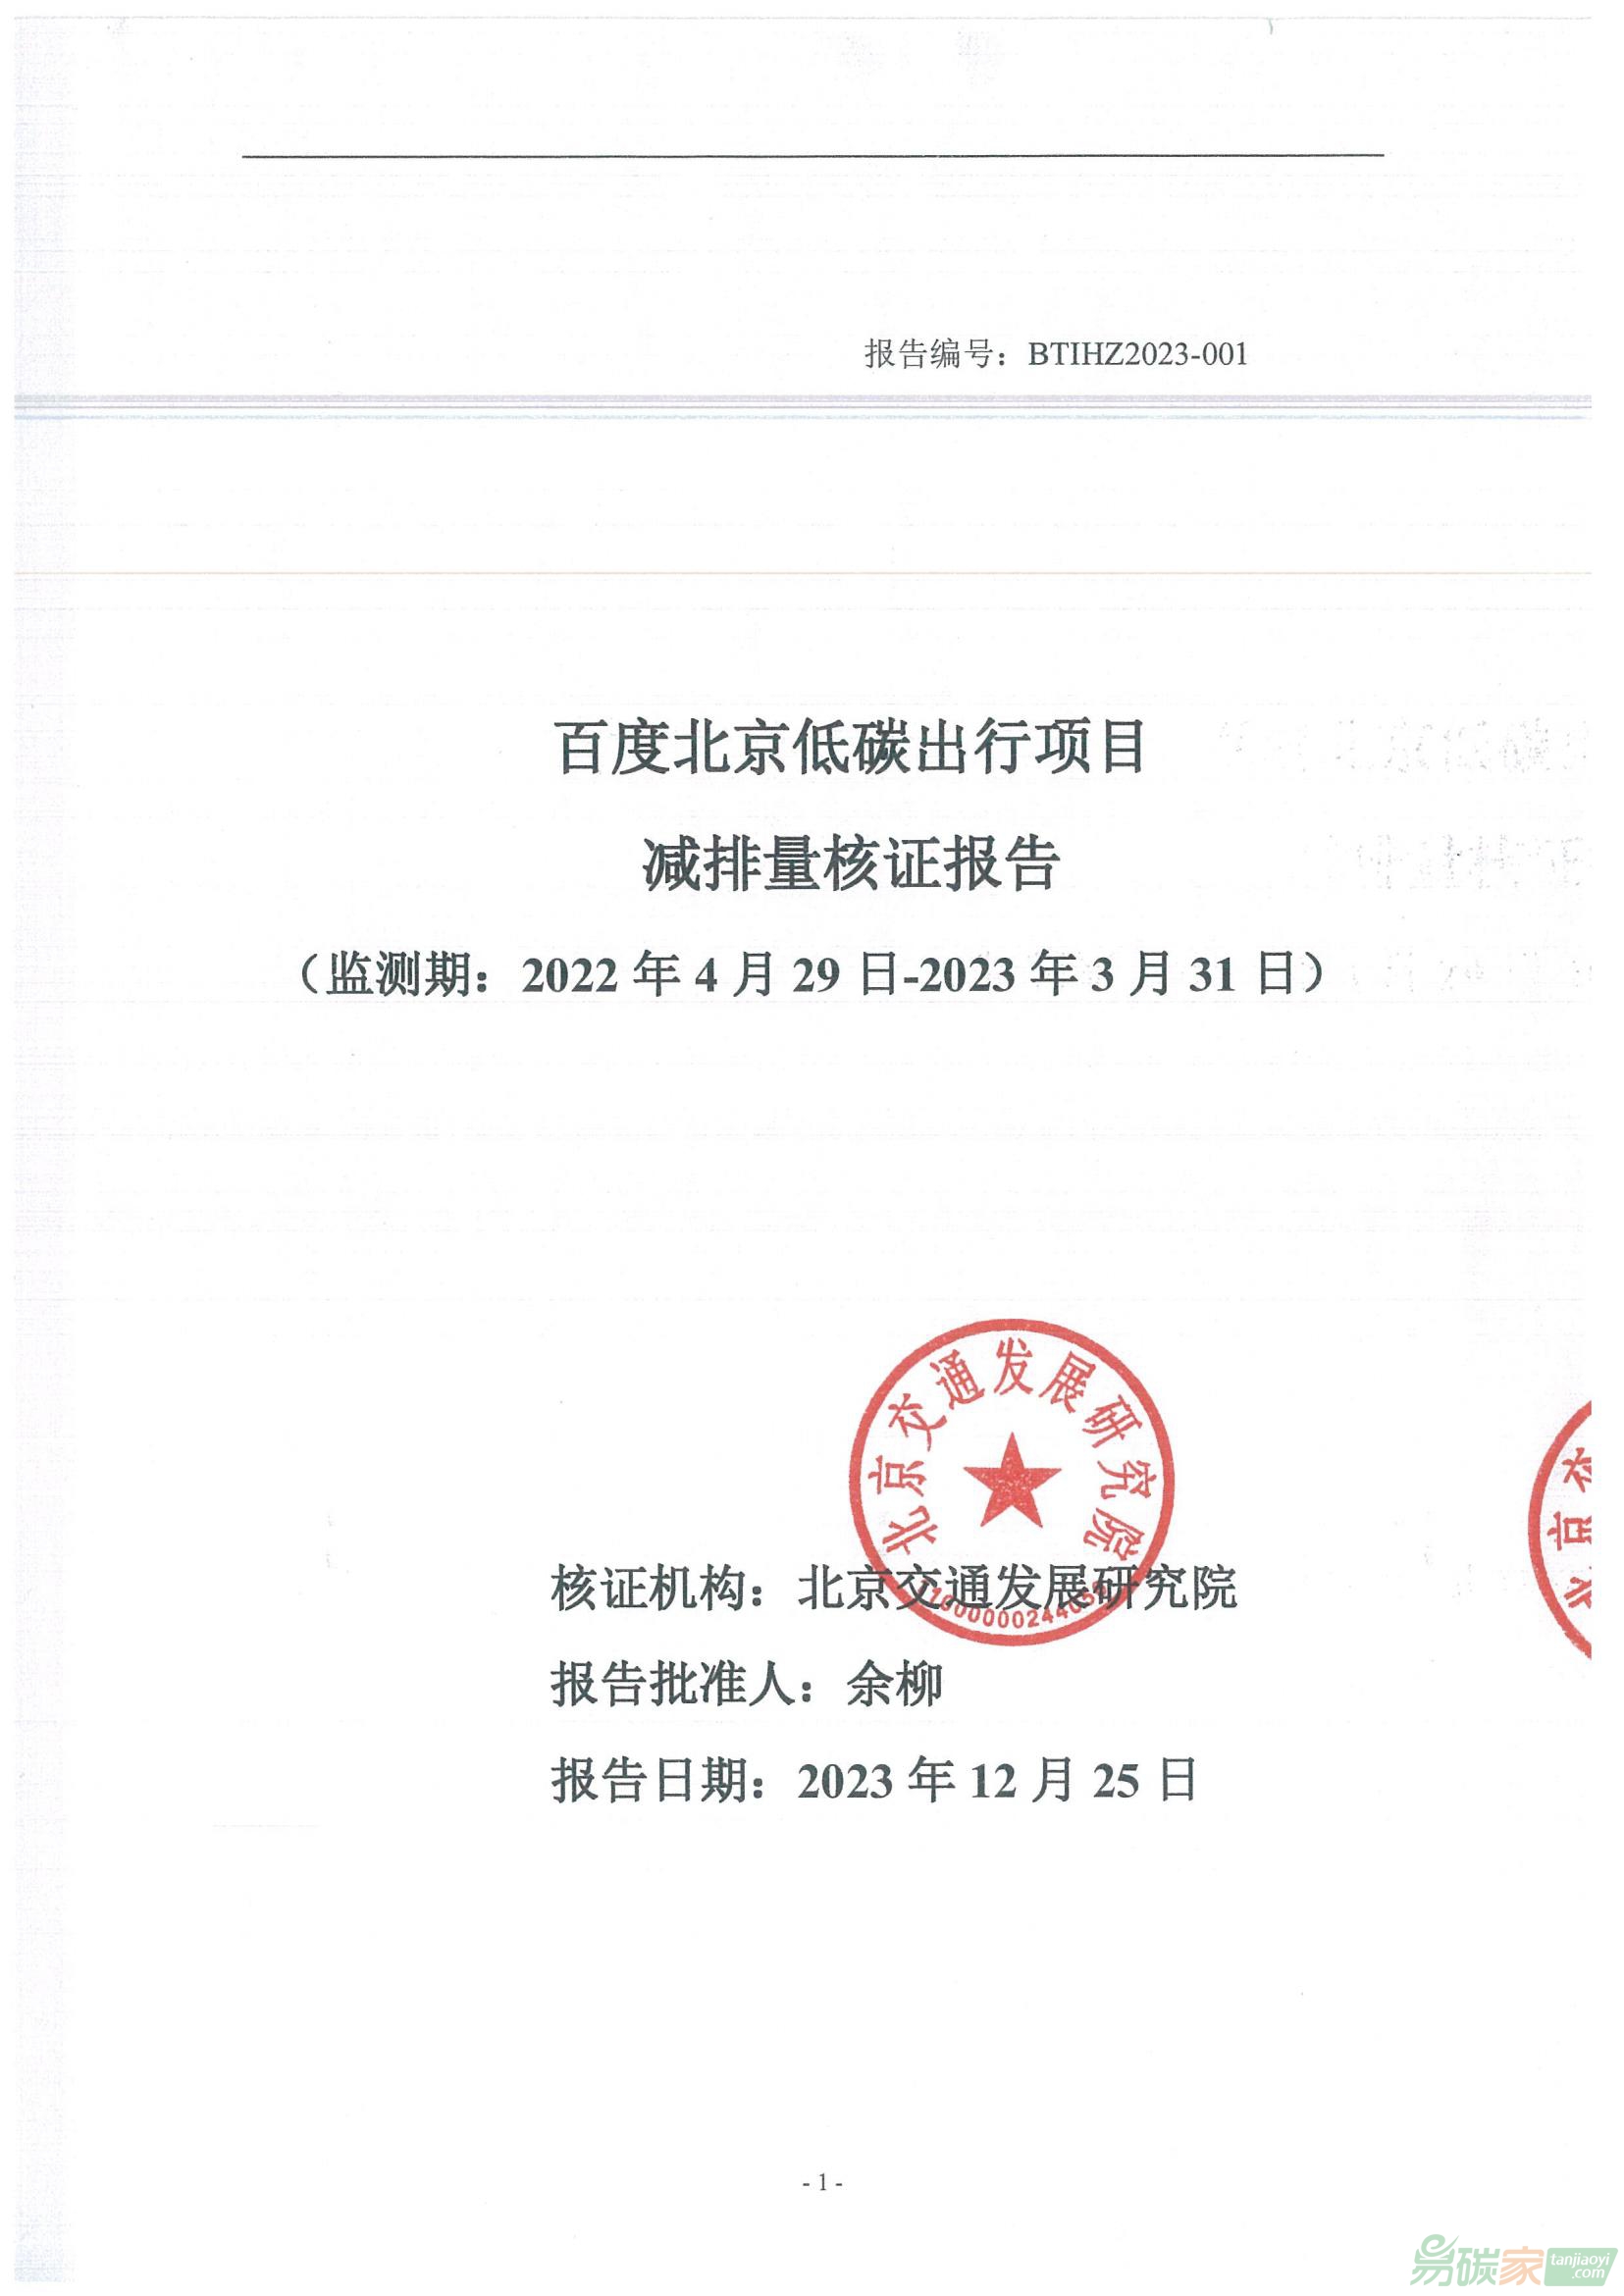 北京市生态环境局关于公示 “百度北京低碳出行项目”碳减排量核证报告的通告